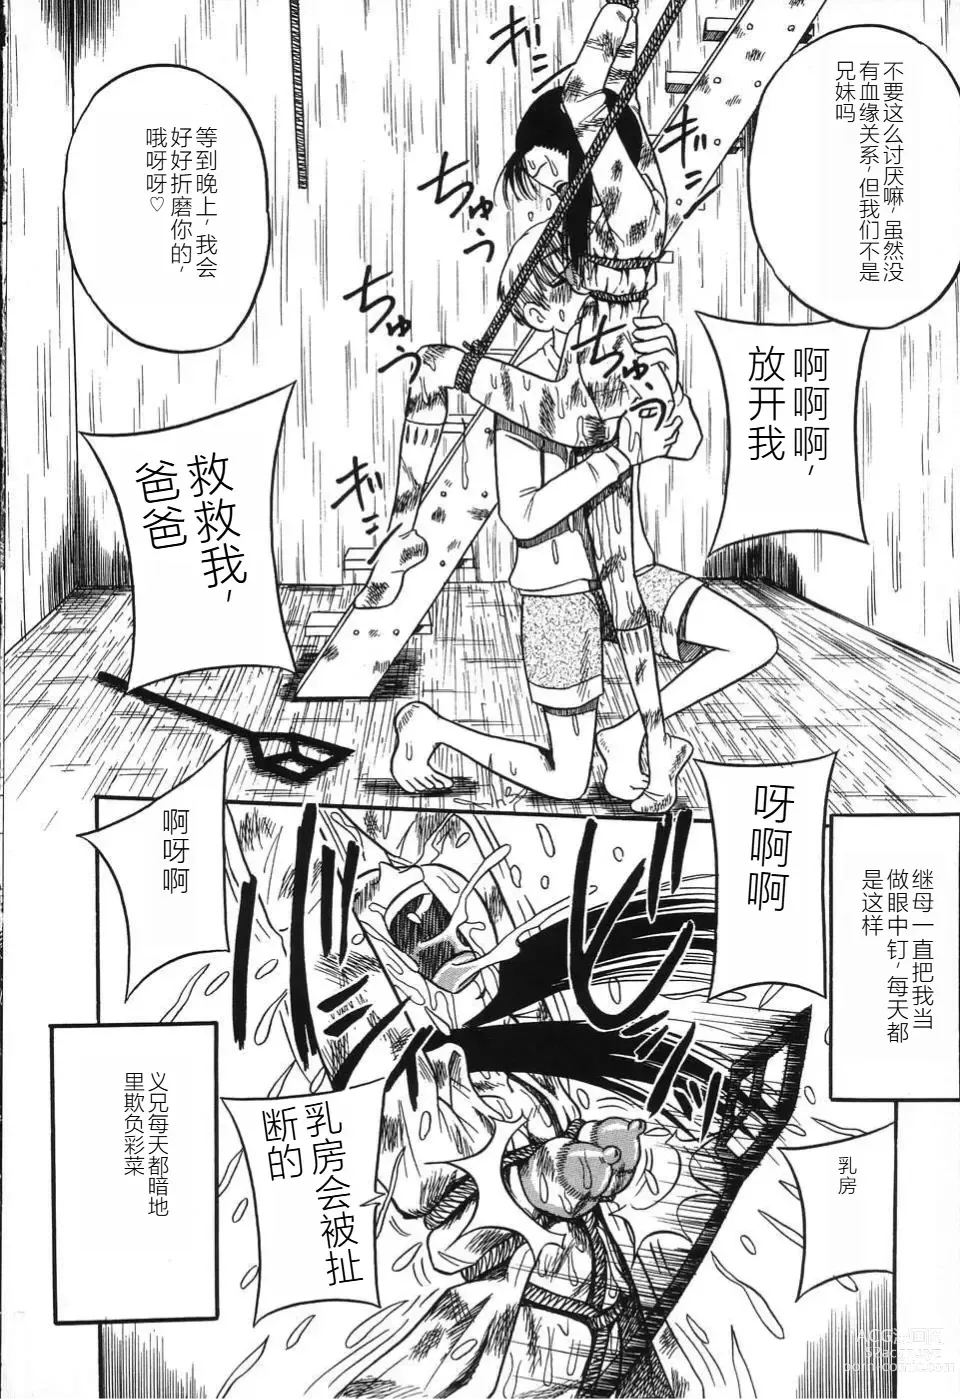 Page 10 of manga Imouto Bakunyuu Shibori